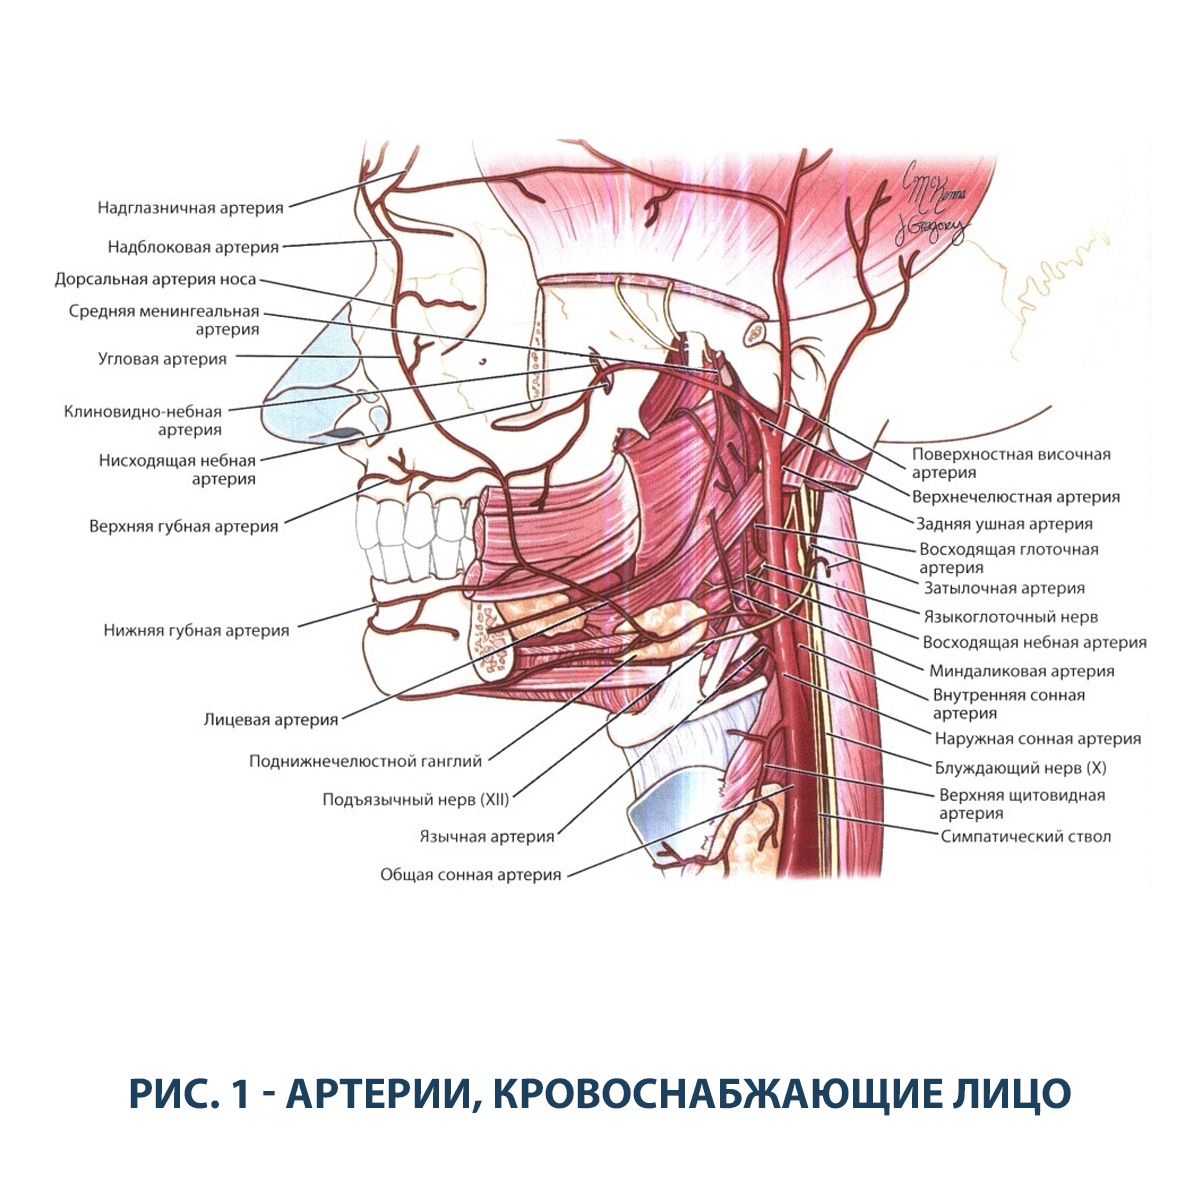 Сонные артерии на лице. Задняя ушная артерия анатомия. Лицевая артерия ветви схема. Верхнечелюстная артерия анатомия ветви. Верхняя щитовидная артерия схема.